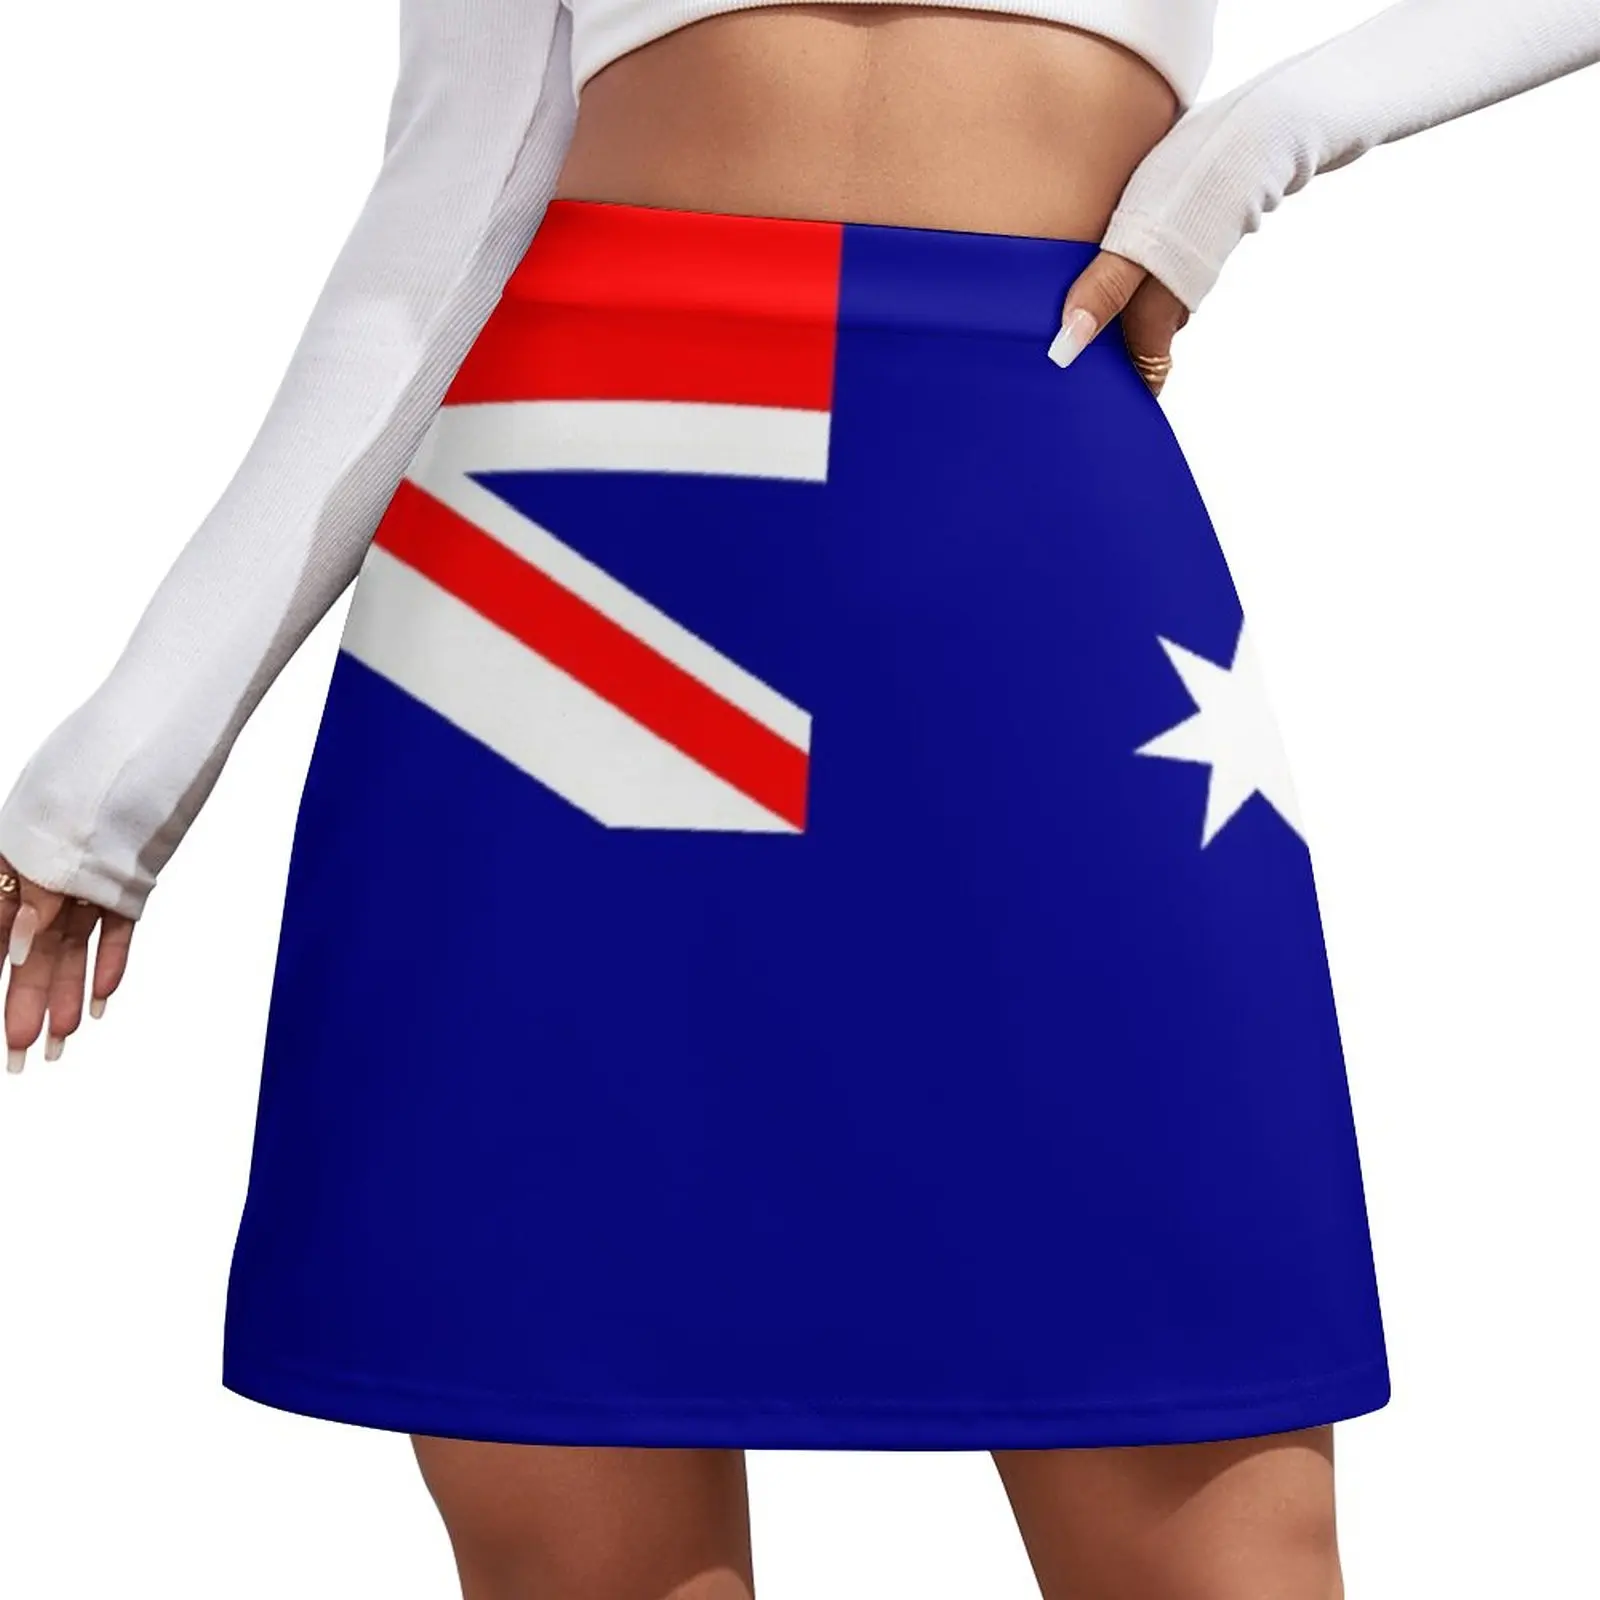 Flag of Australia - Australian Flag - I Love Australia Mini Skirt new in dresses Skirt for girls korean style mini dresses american flag star criss cross mini dress in multicolor size s